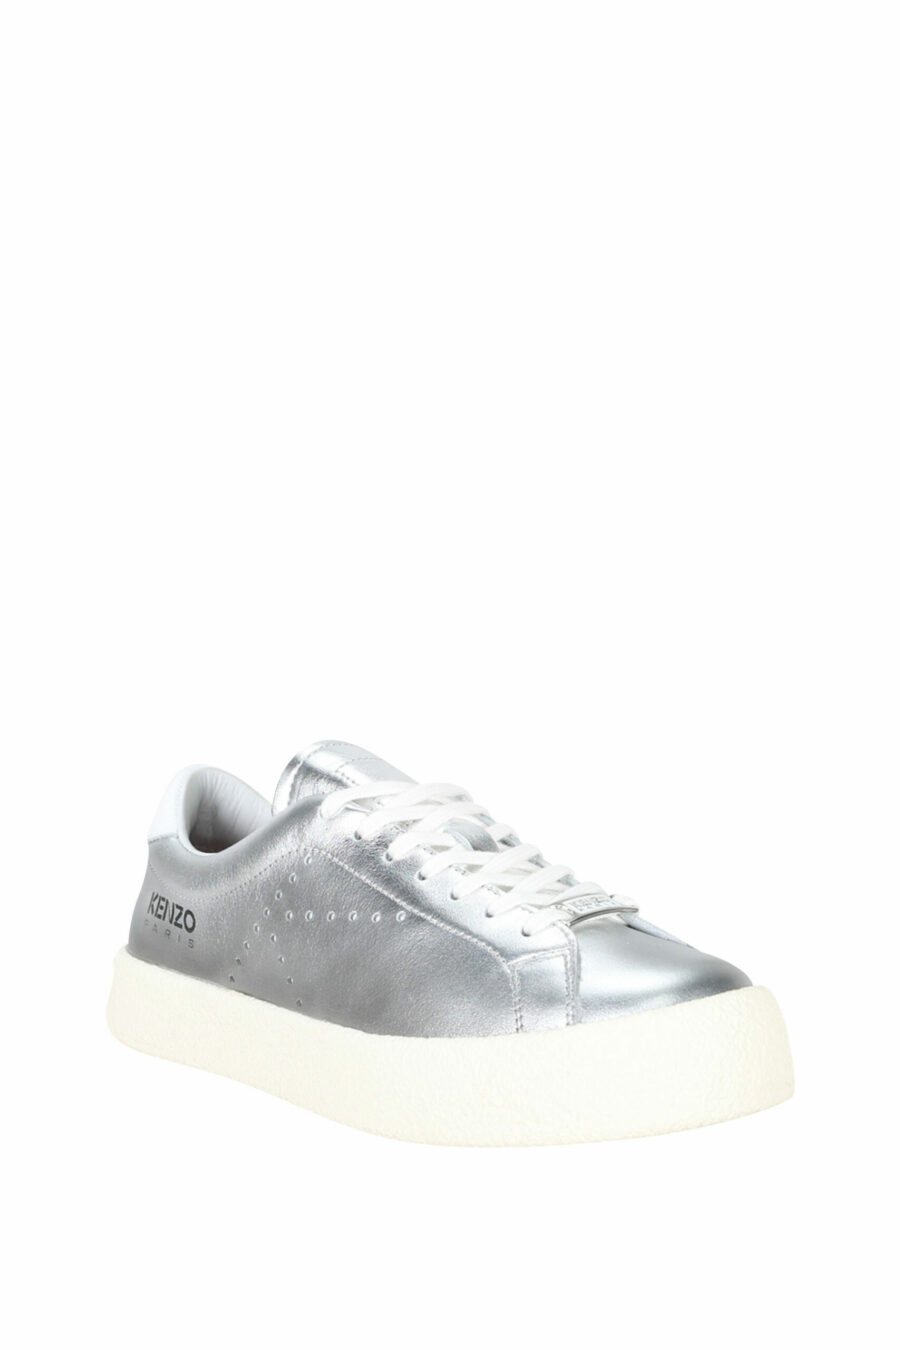 Silberne Schuhe mit schwarzem Mini-Logo - 3612230556461 1 skaliert